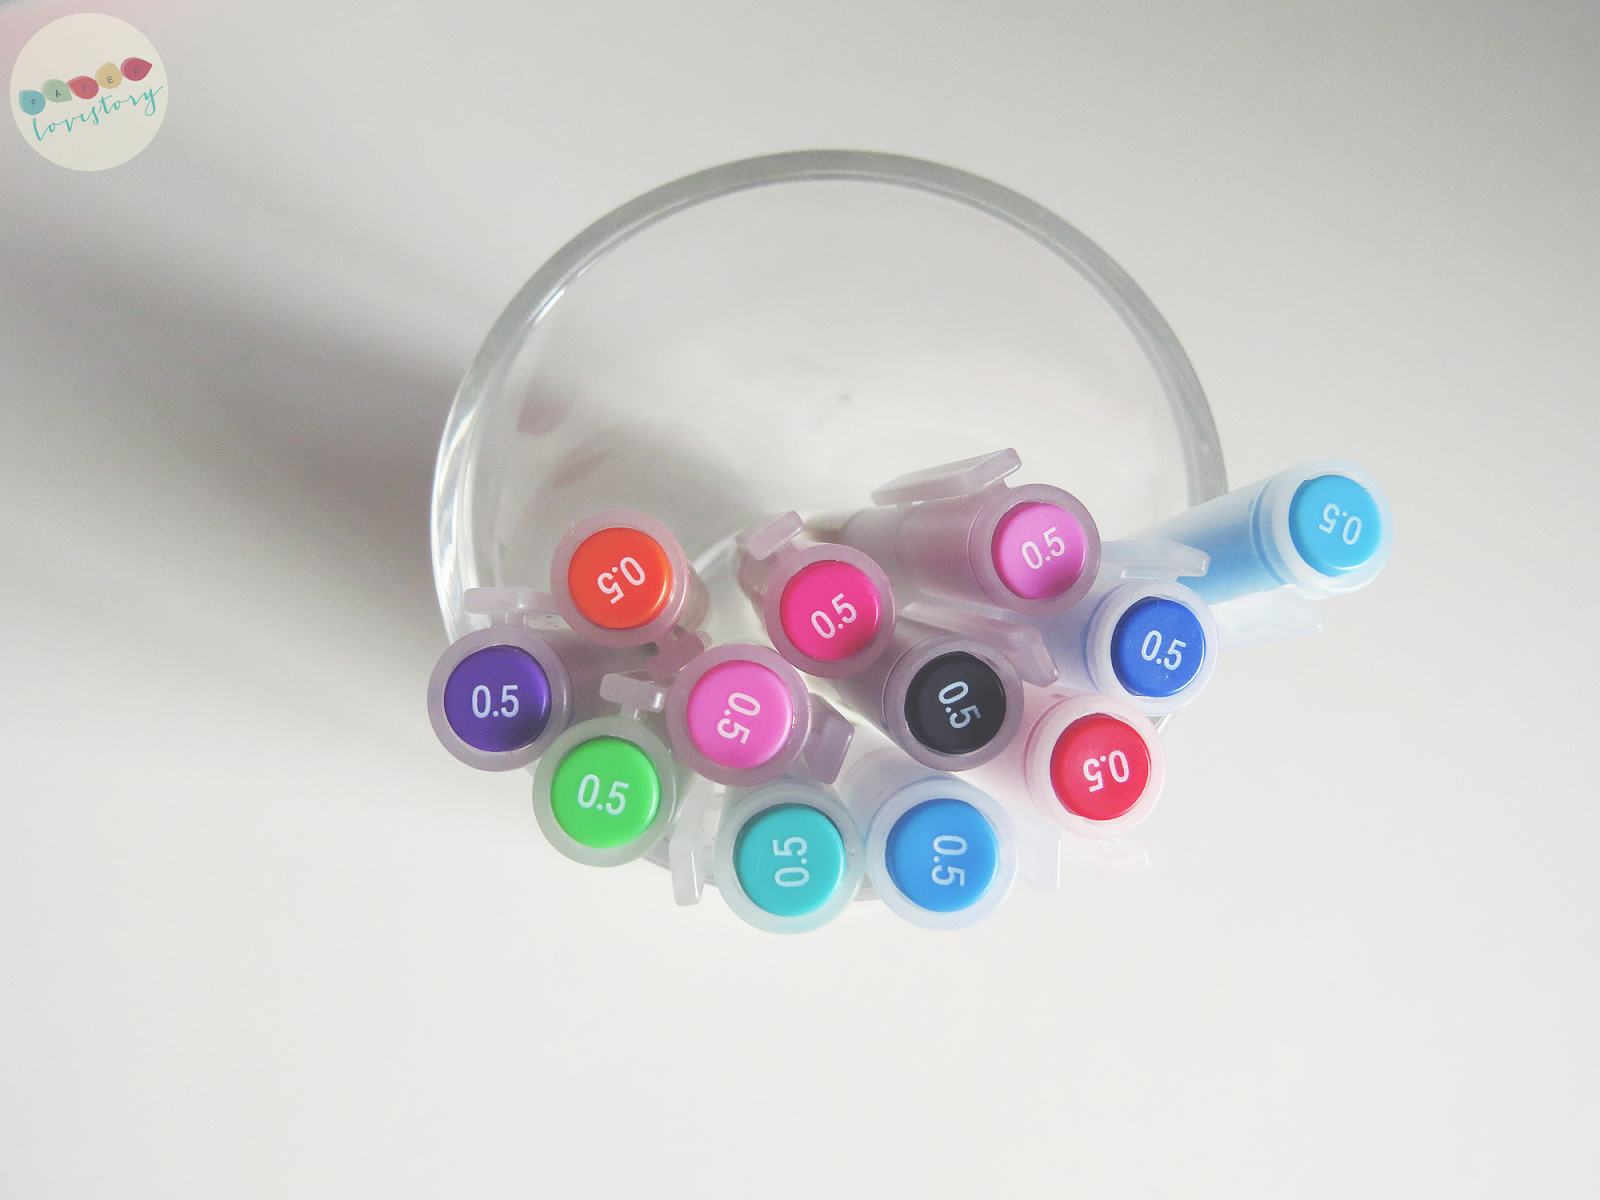 Muji Style Color Gel Pens (12 Pcs) – Pencil Box Factory